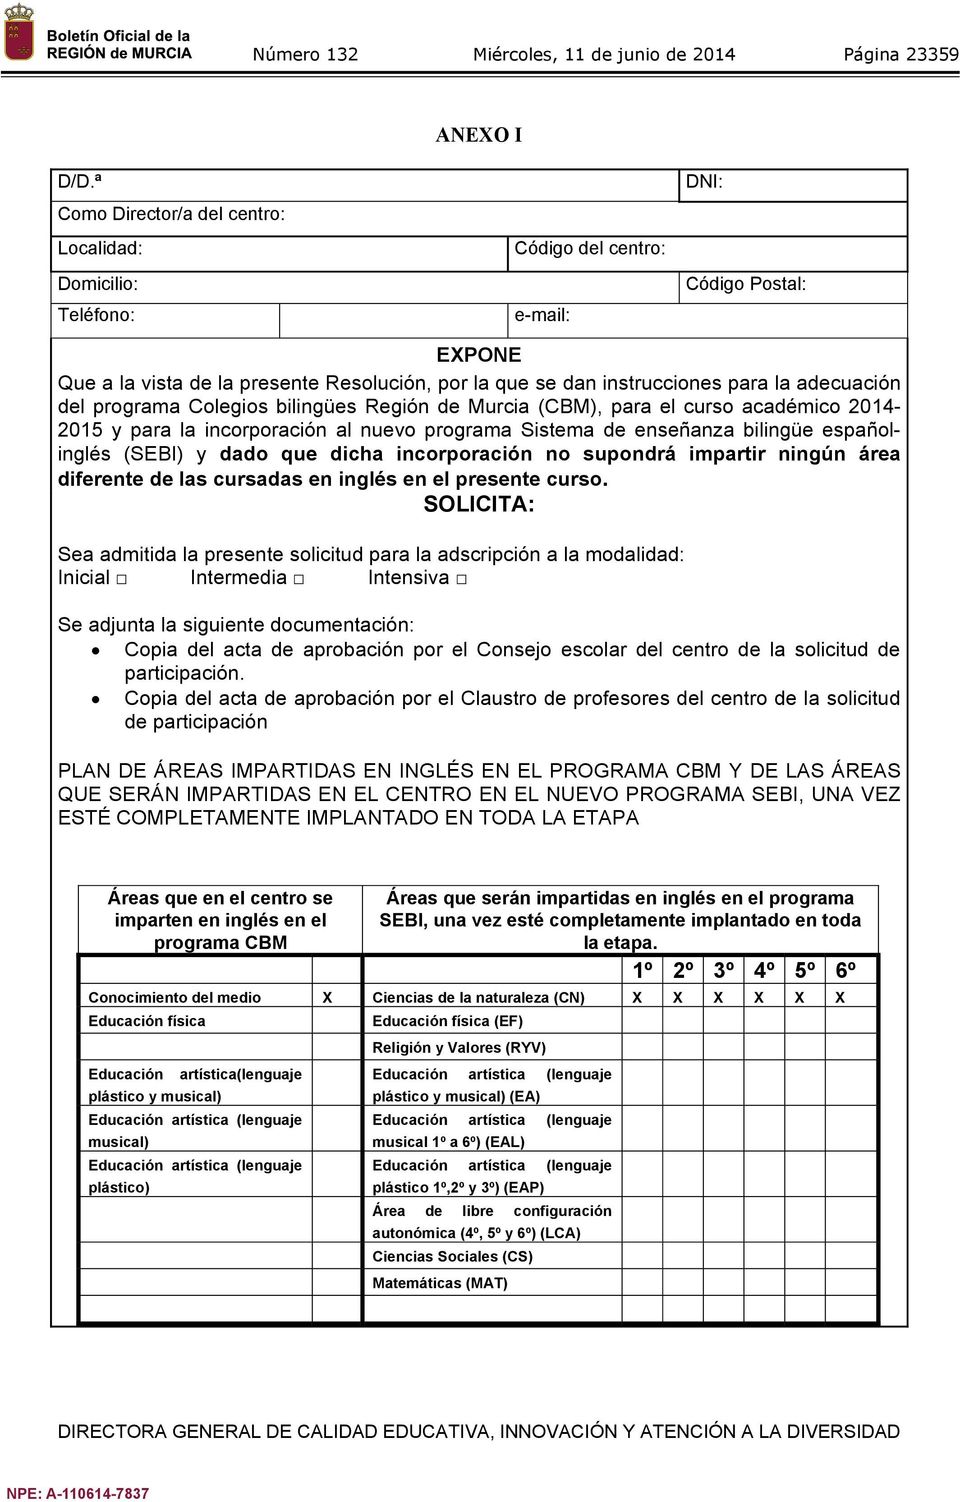 para la adecuación del programa Colegios bilingües Región de Murcia (CBM), para el curso académico 2014-2015 y para la incorporación al nuevo programa Sistema de enseñanza bilingüe españolinglés